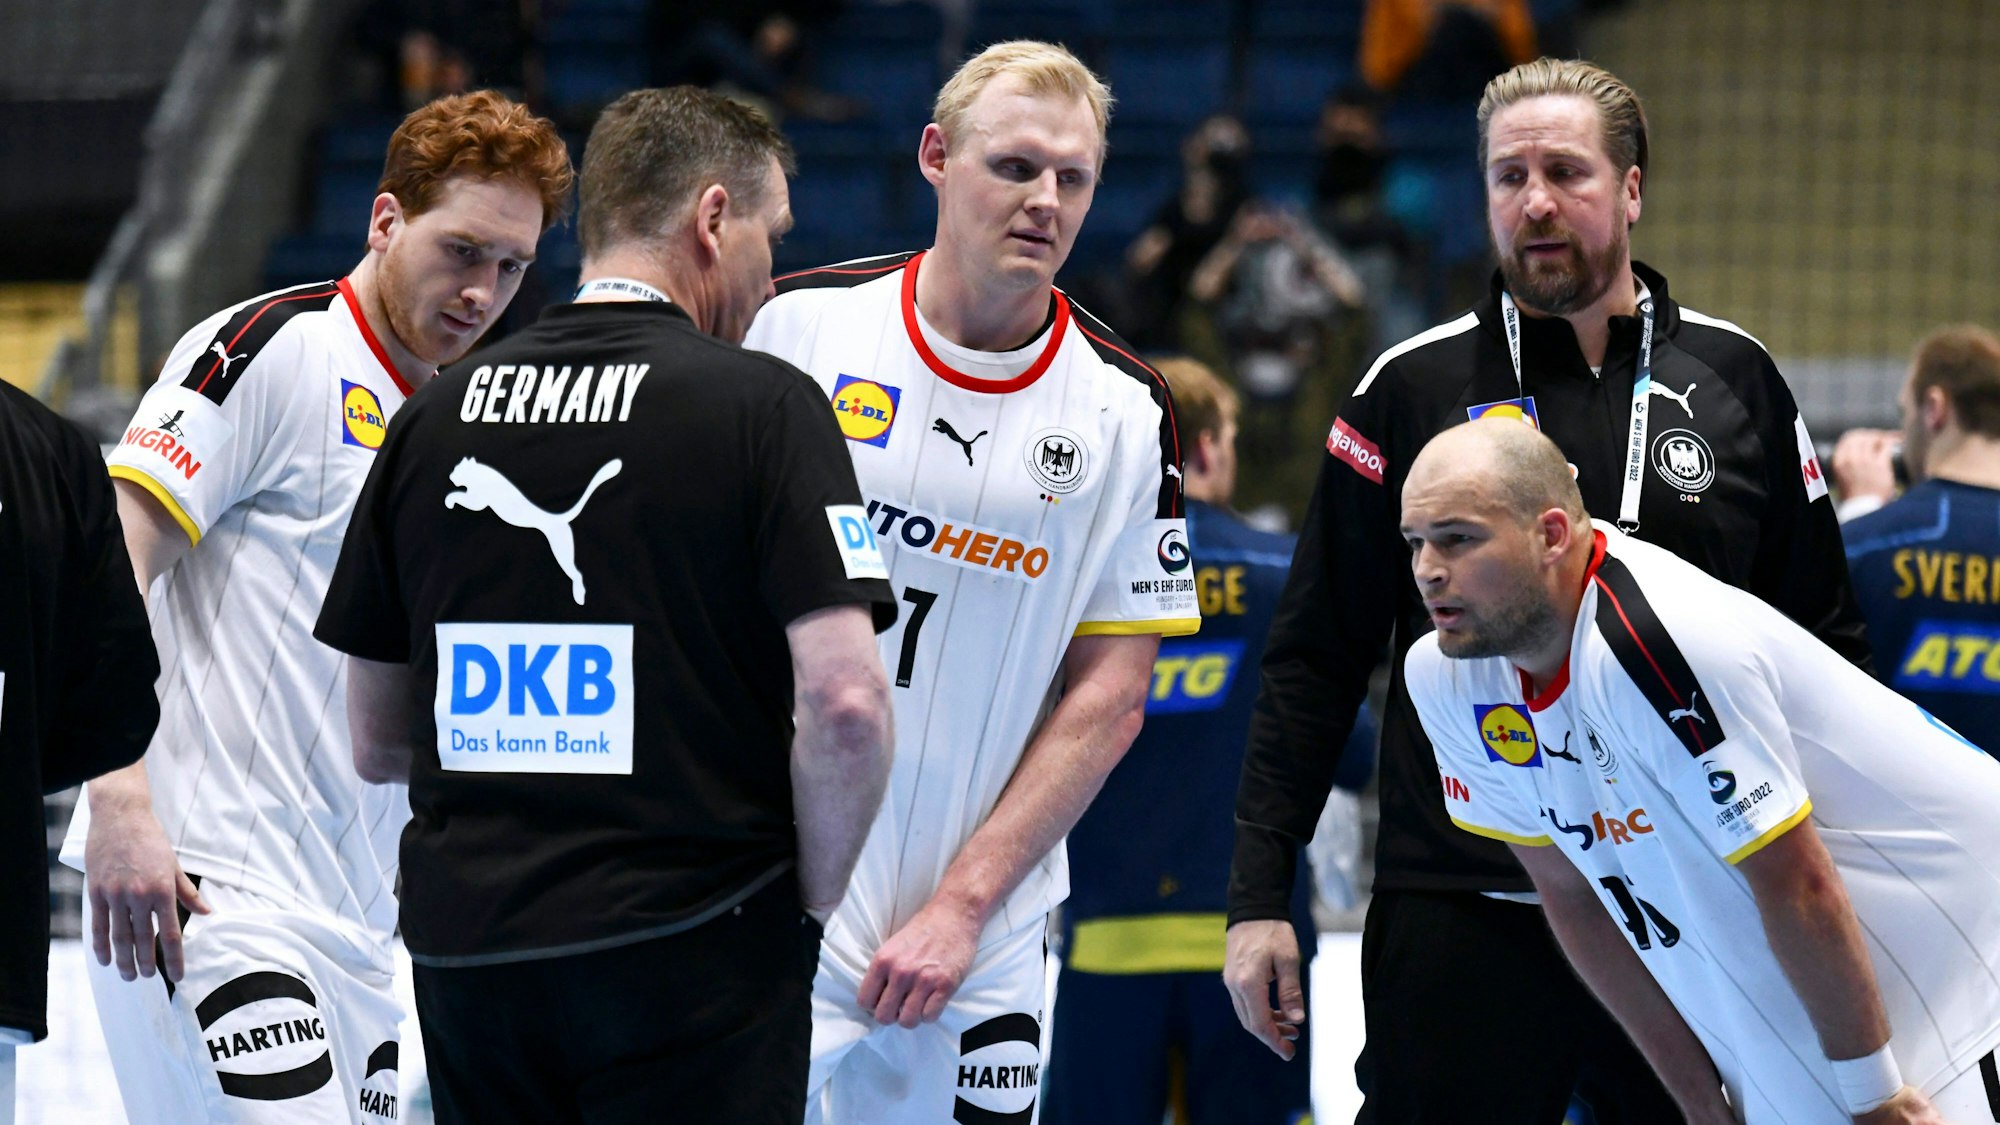 Auszeit bei der Handball-EM: Bundestrainer Alfred Gislason spricht mit seinen Spielern.